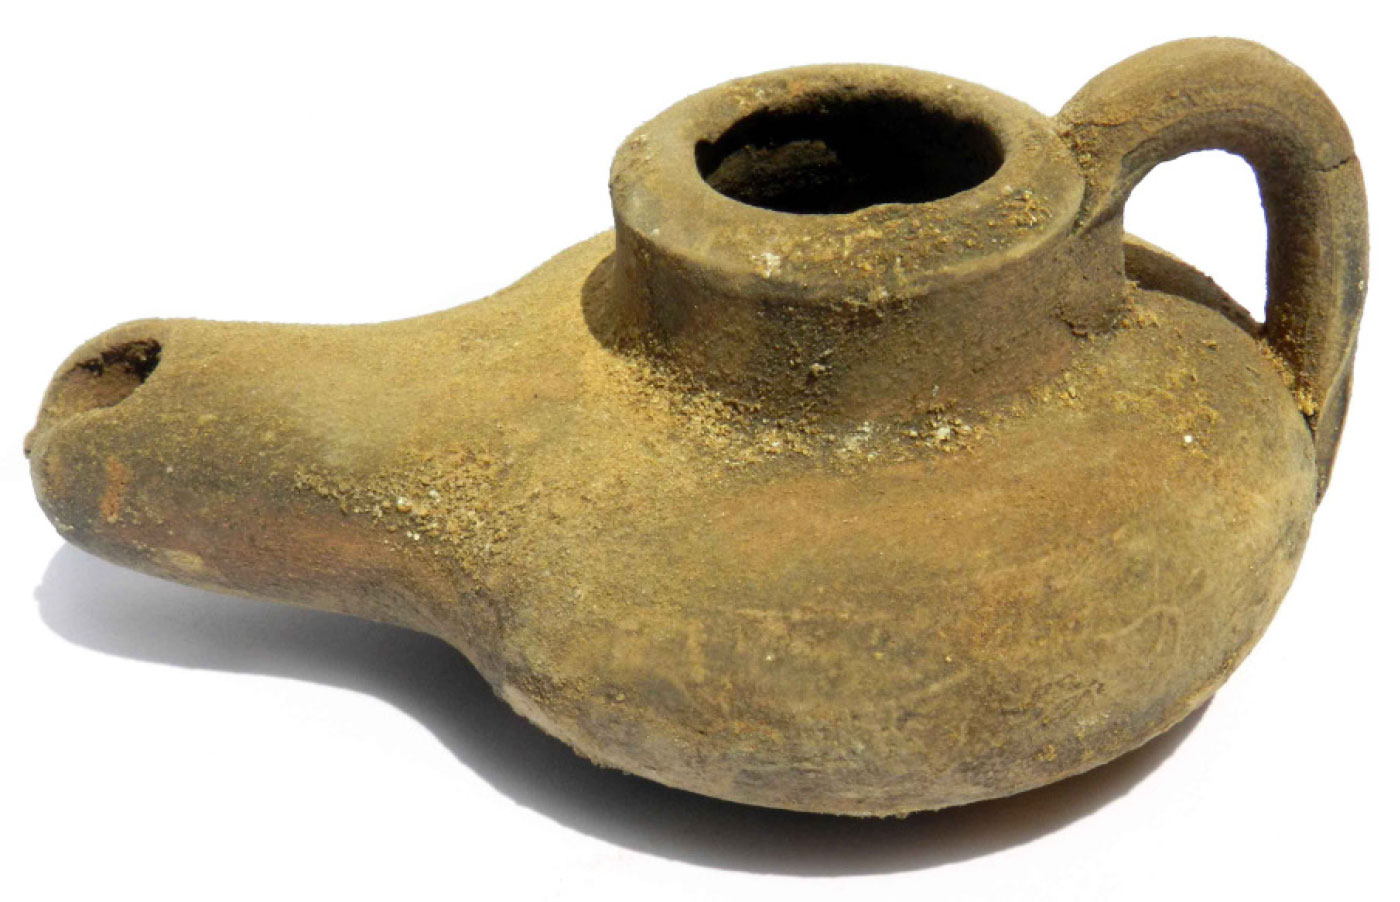 Ceramic pot for oil